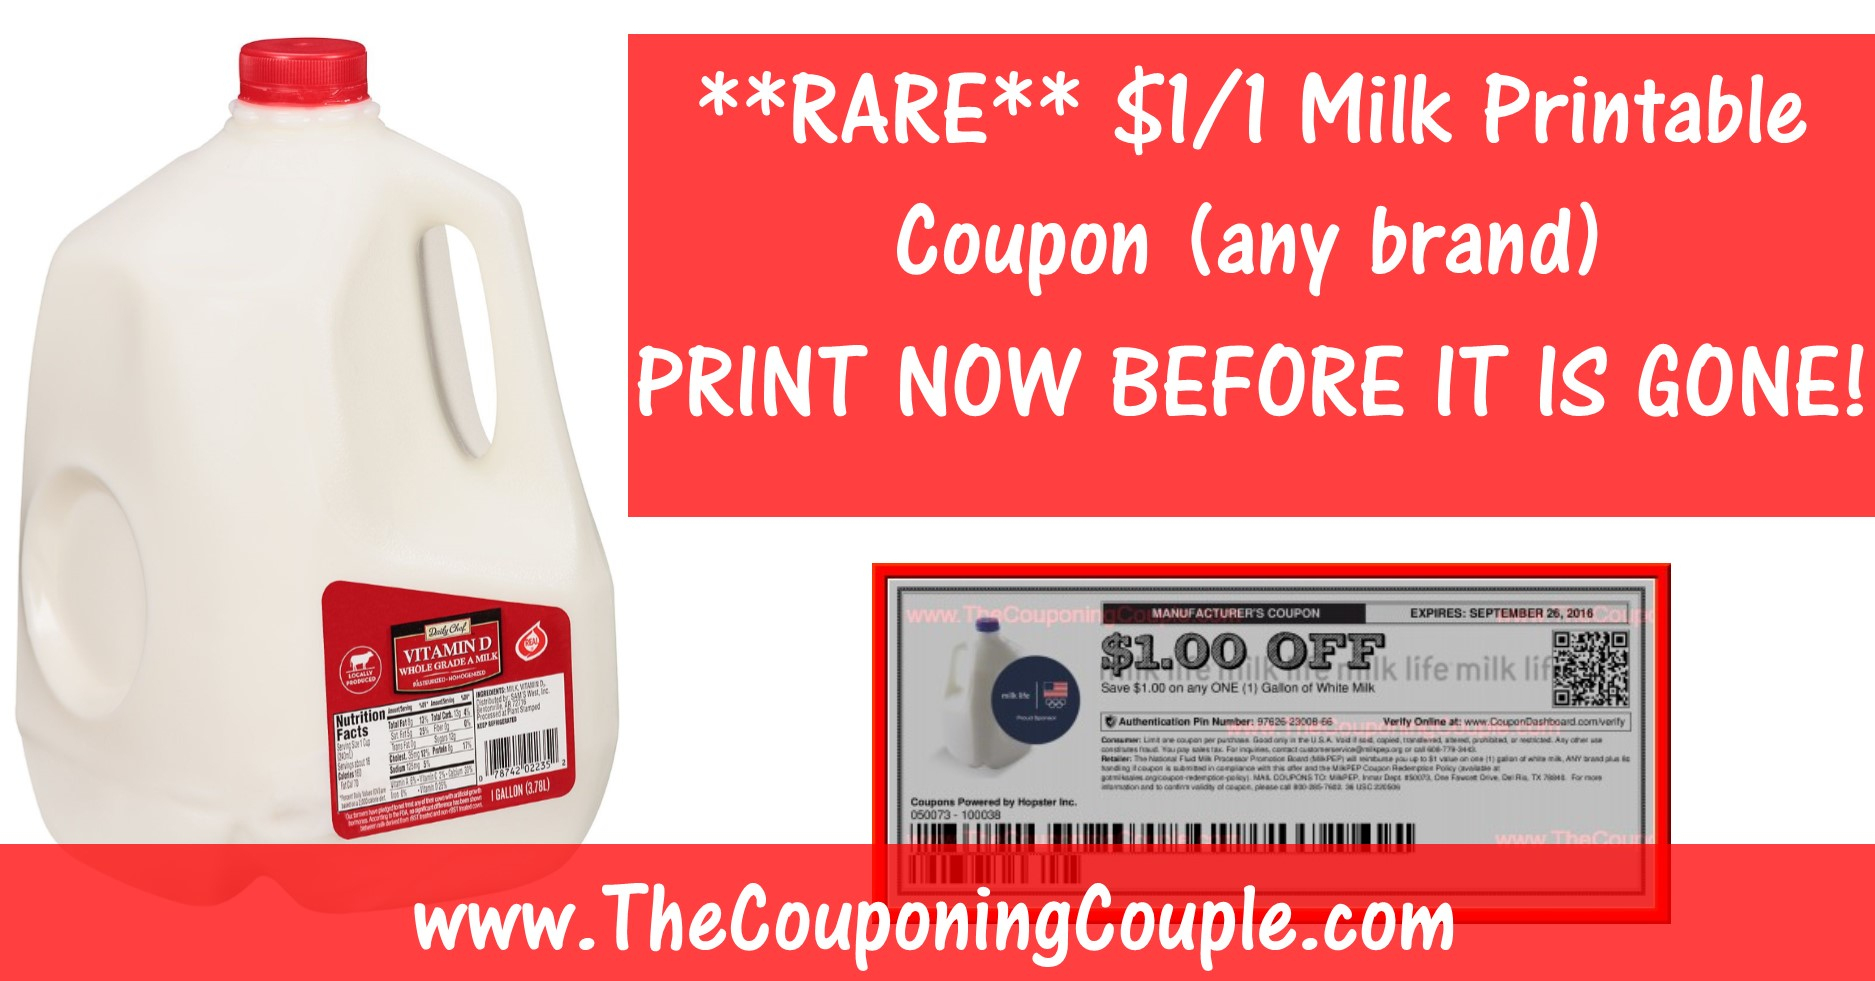 Rare Milk Printable Coupon ~ Save $1.00/1 Gallon Any Brand! - Free Milk Coupons Printable